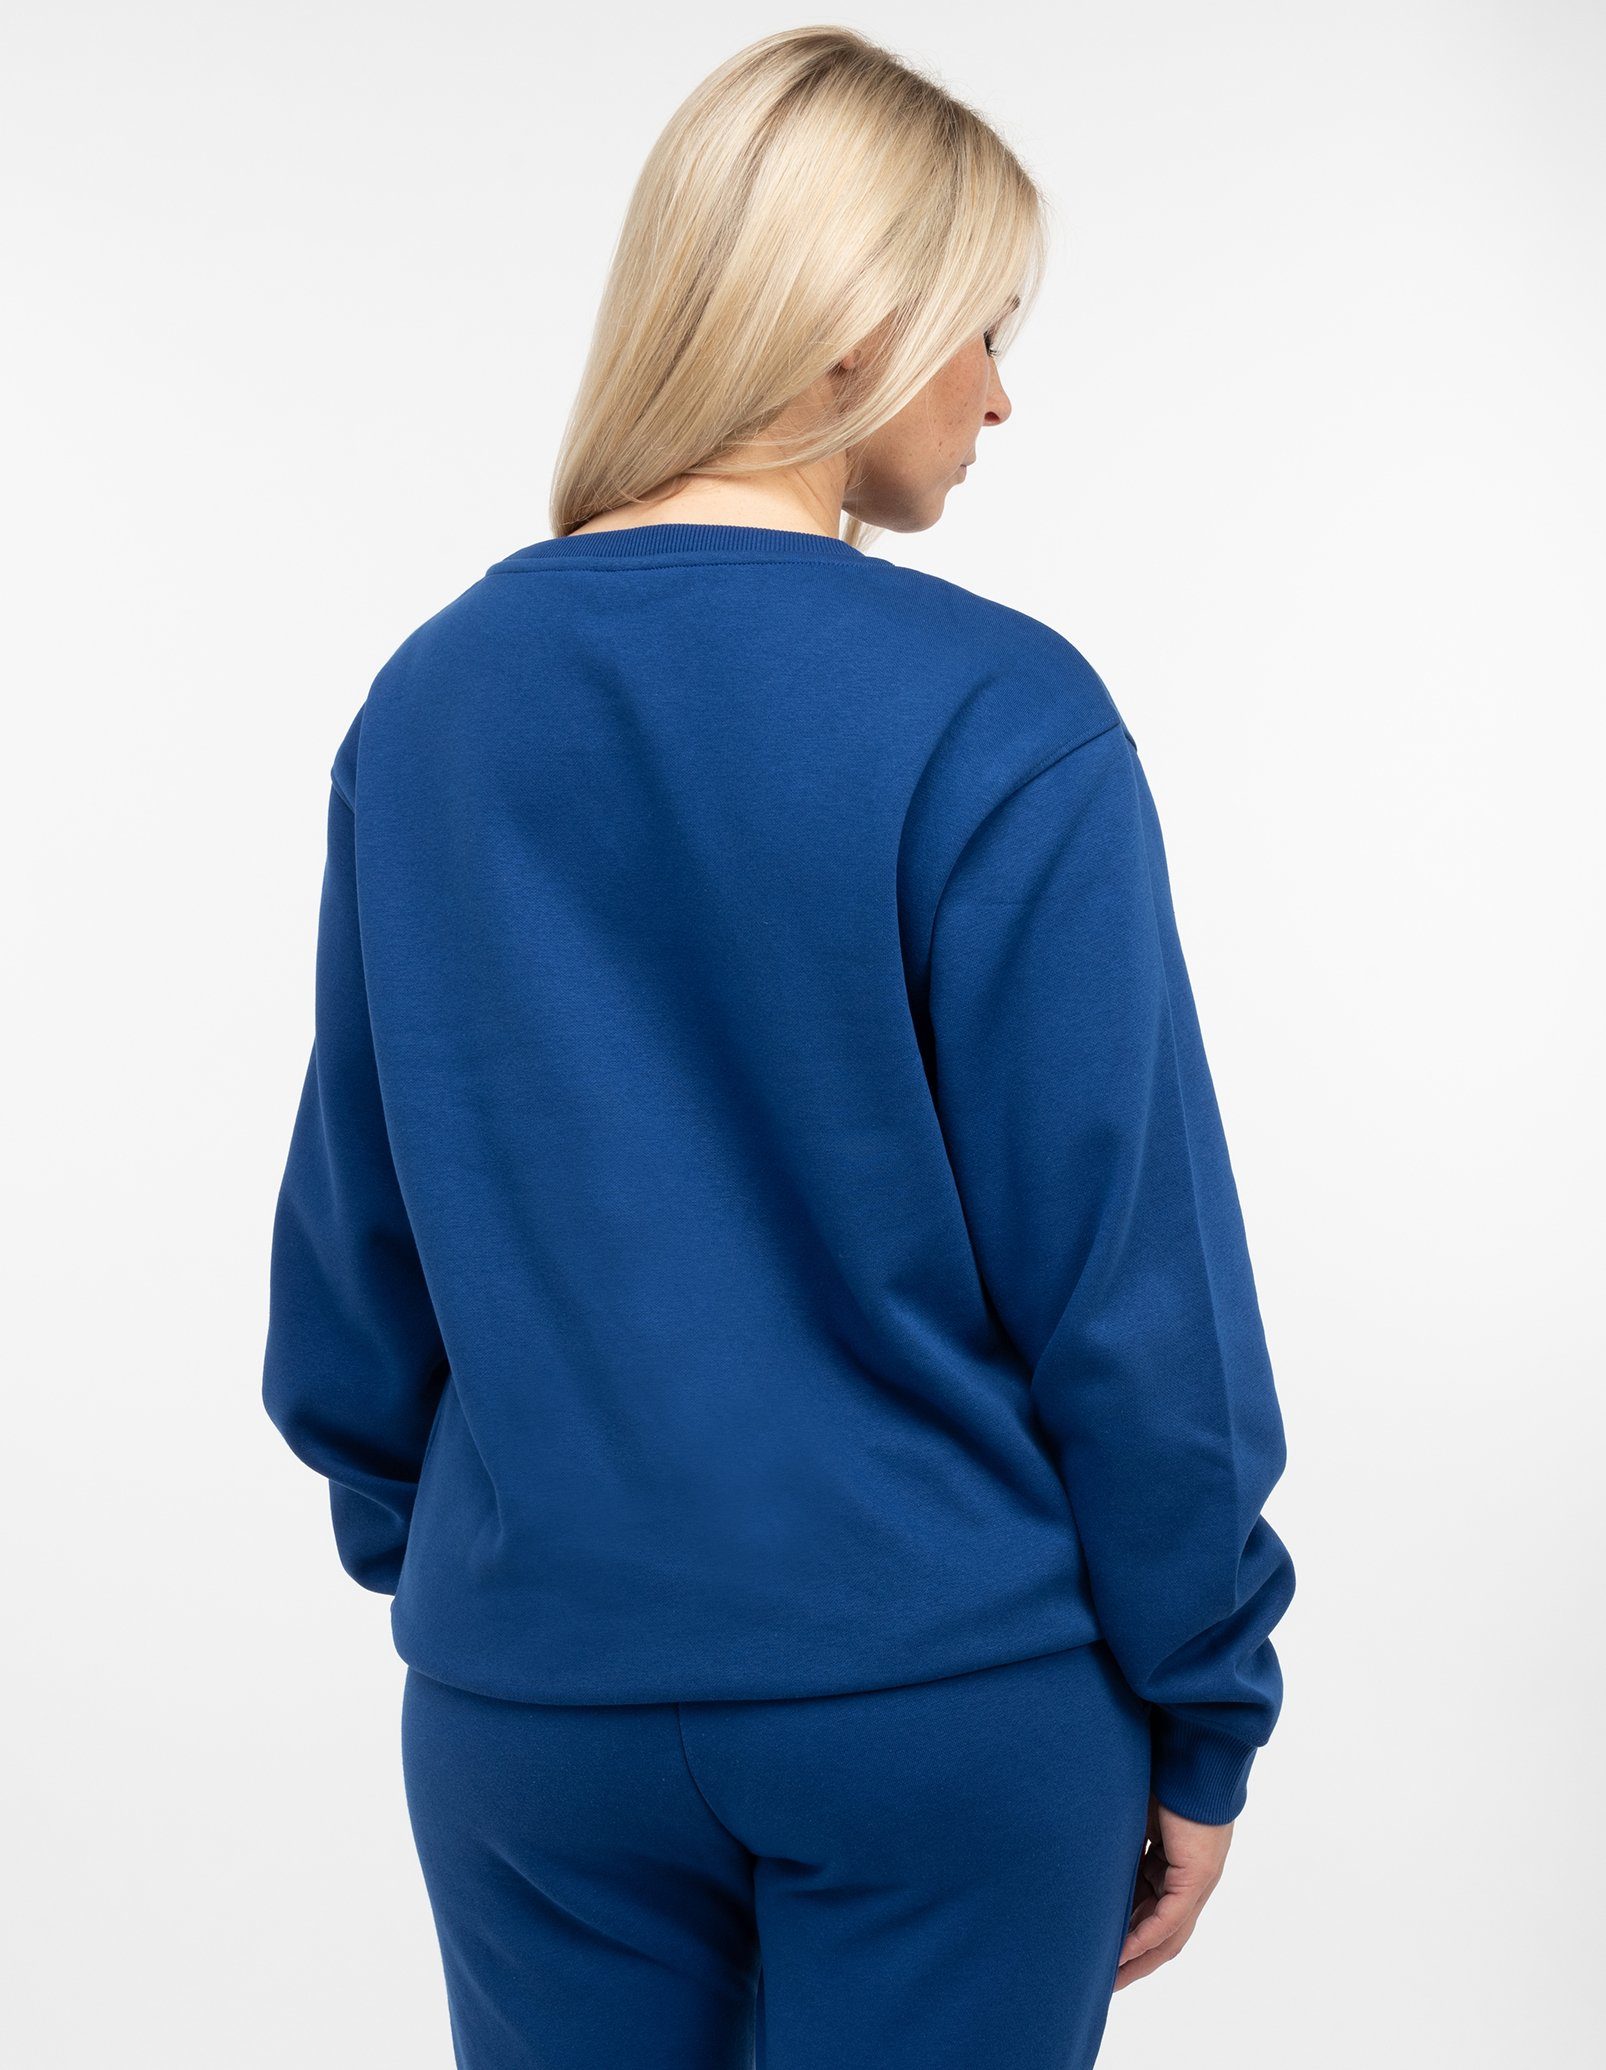 Chilled Mercury Damen / Pullover Sweatshirt Blau